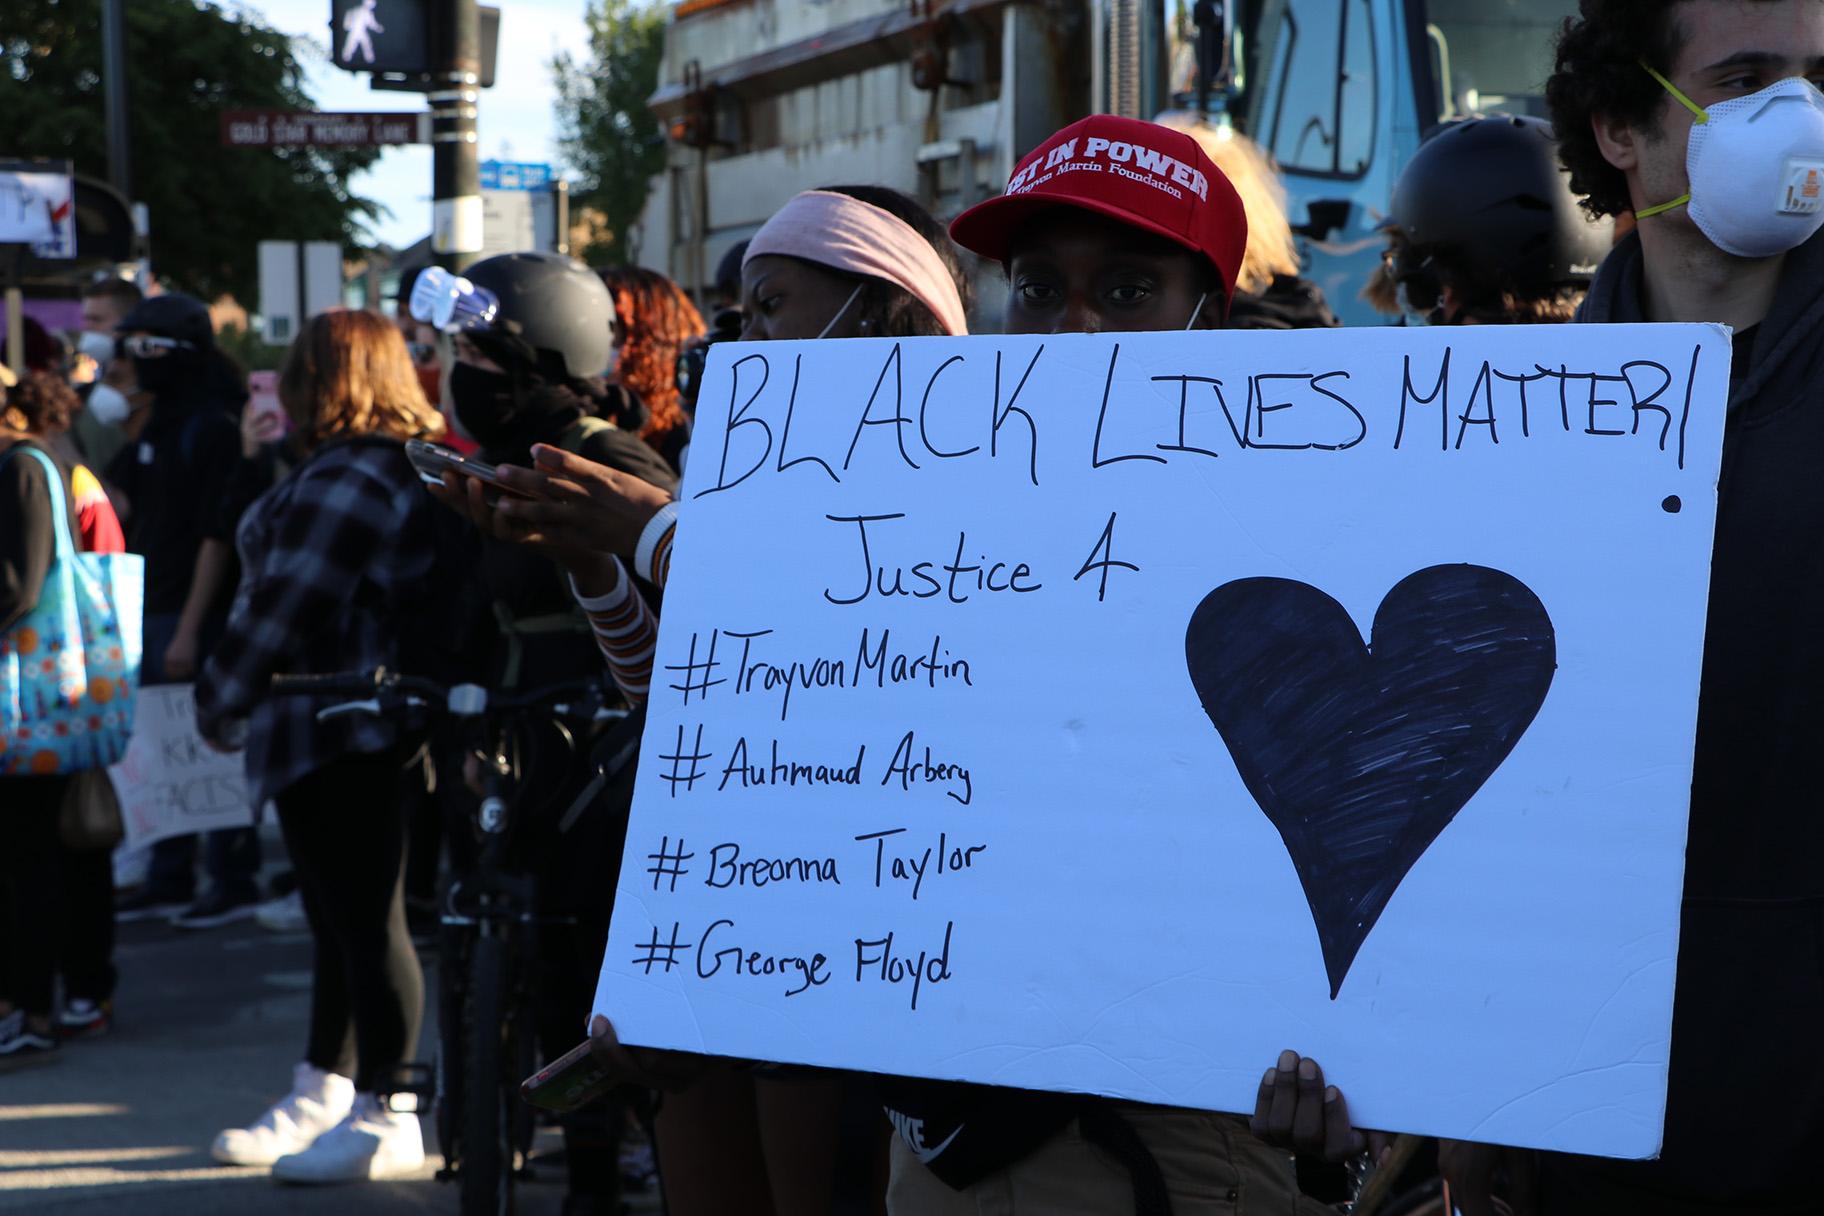 A protester holds a Black Lives Matter sign. (Evan Garcia / WTTW News)